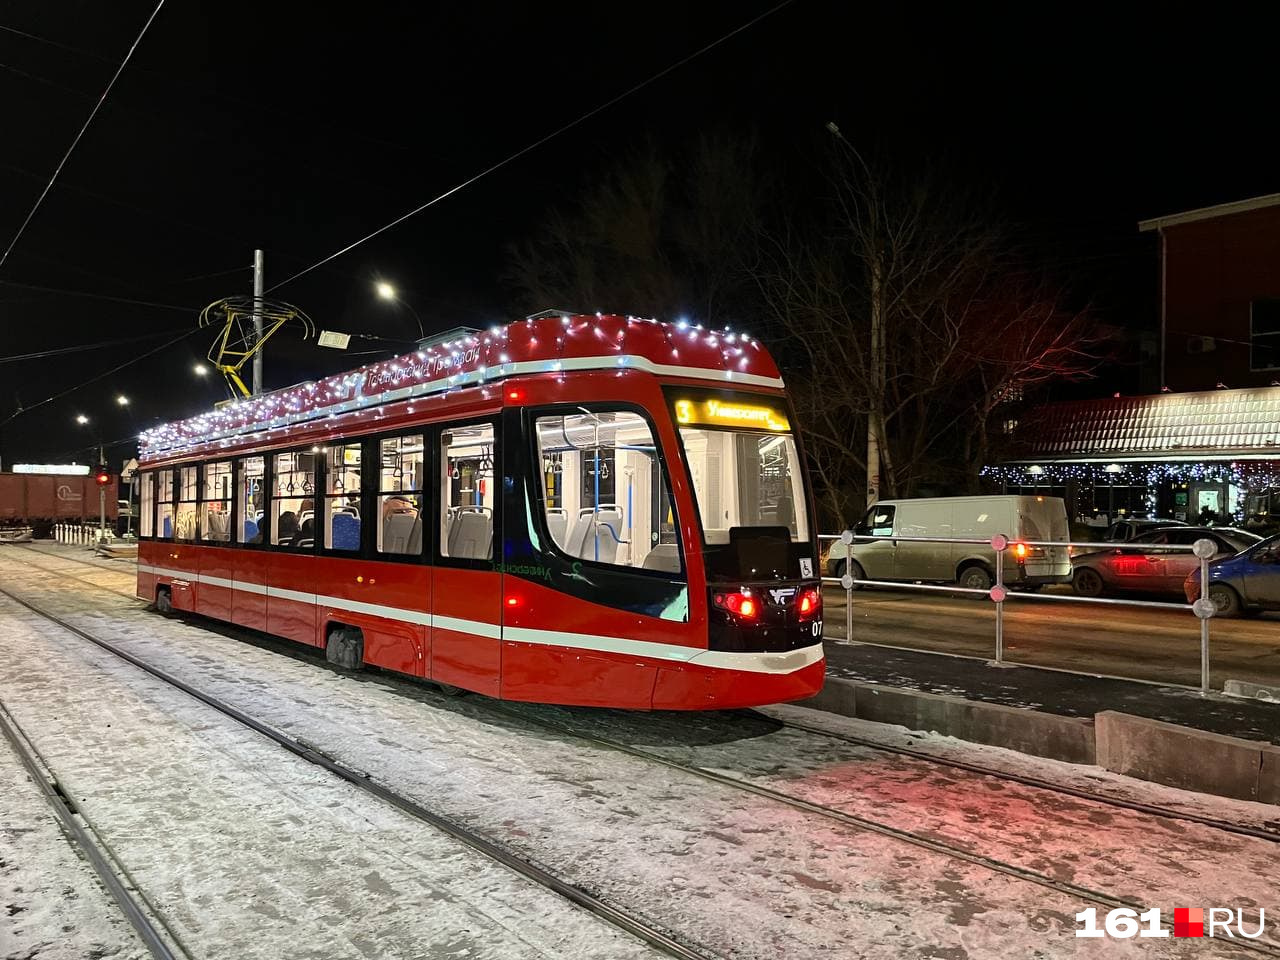 Даже новые трамваи создают праздничную атмосферу в Таганроге